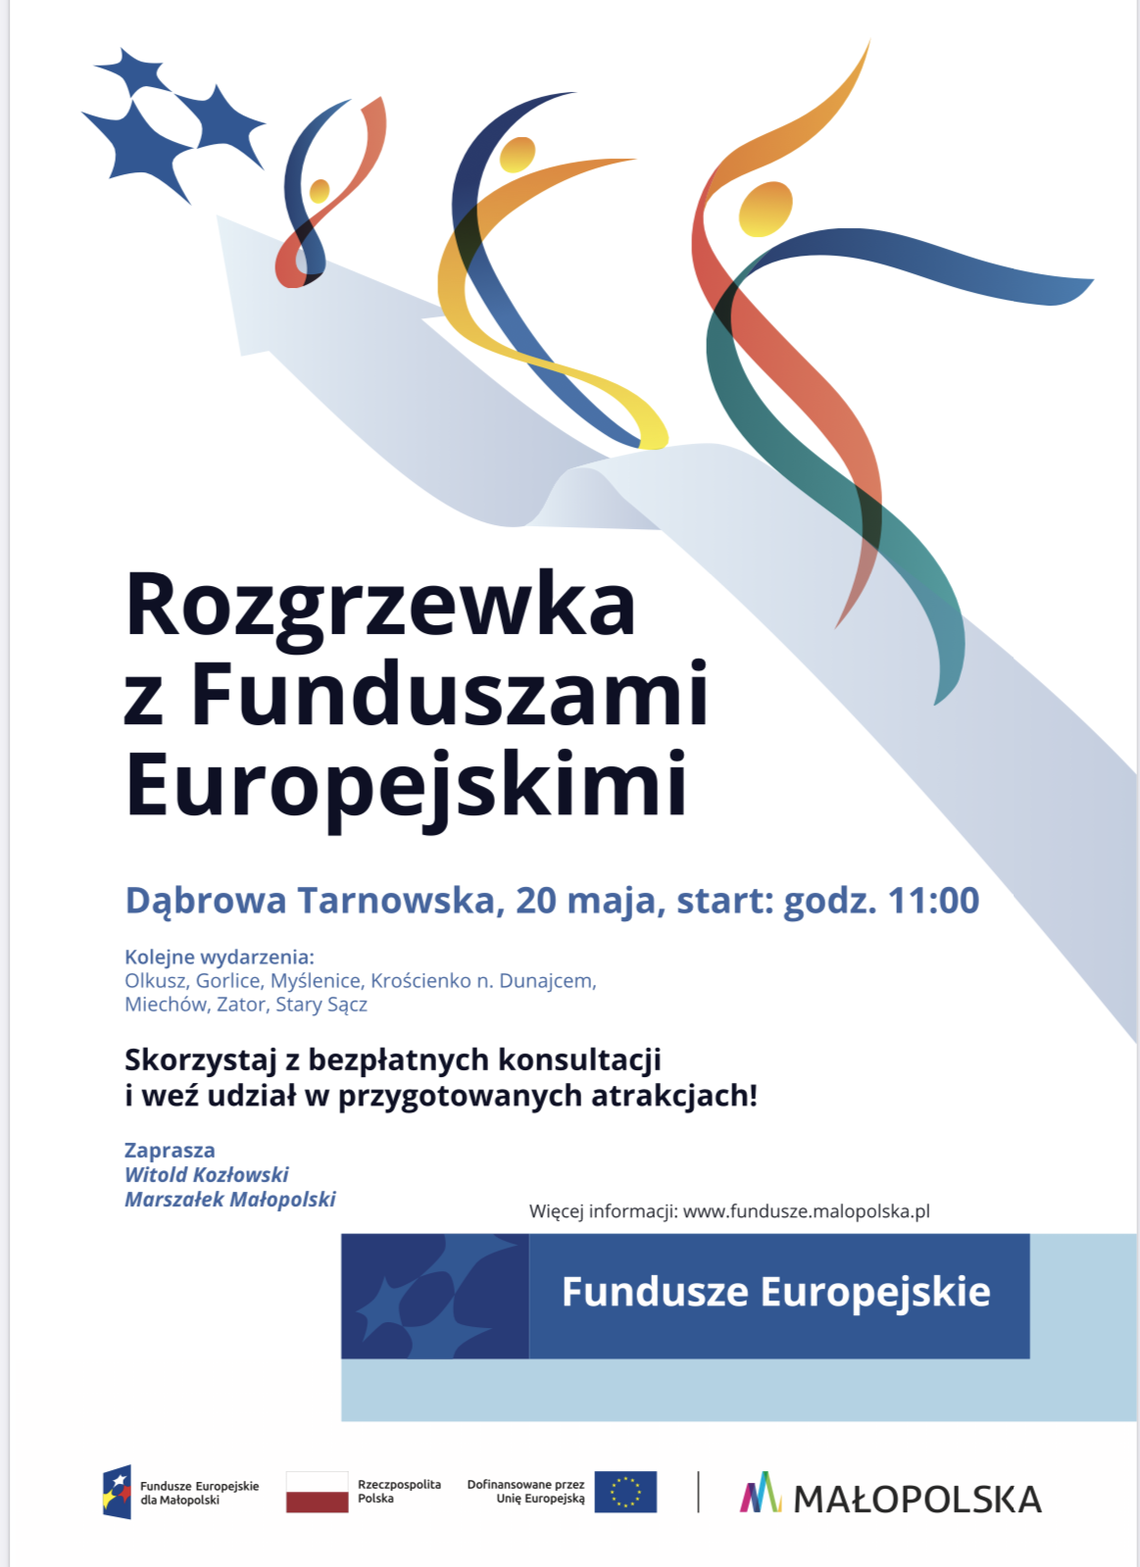 ,,Rozgrzewka z Funduszami Europejskimi” w Dąbrowie Tarnowskiej